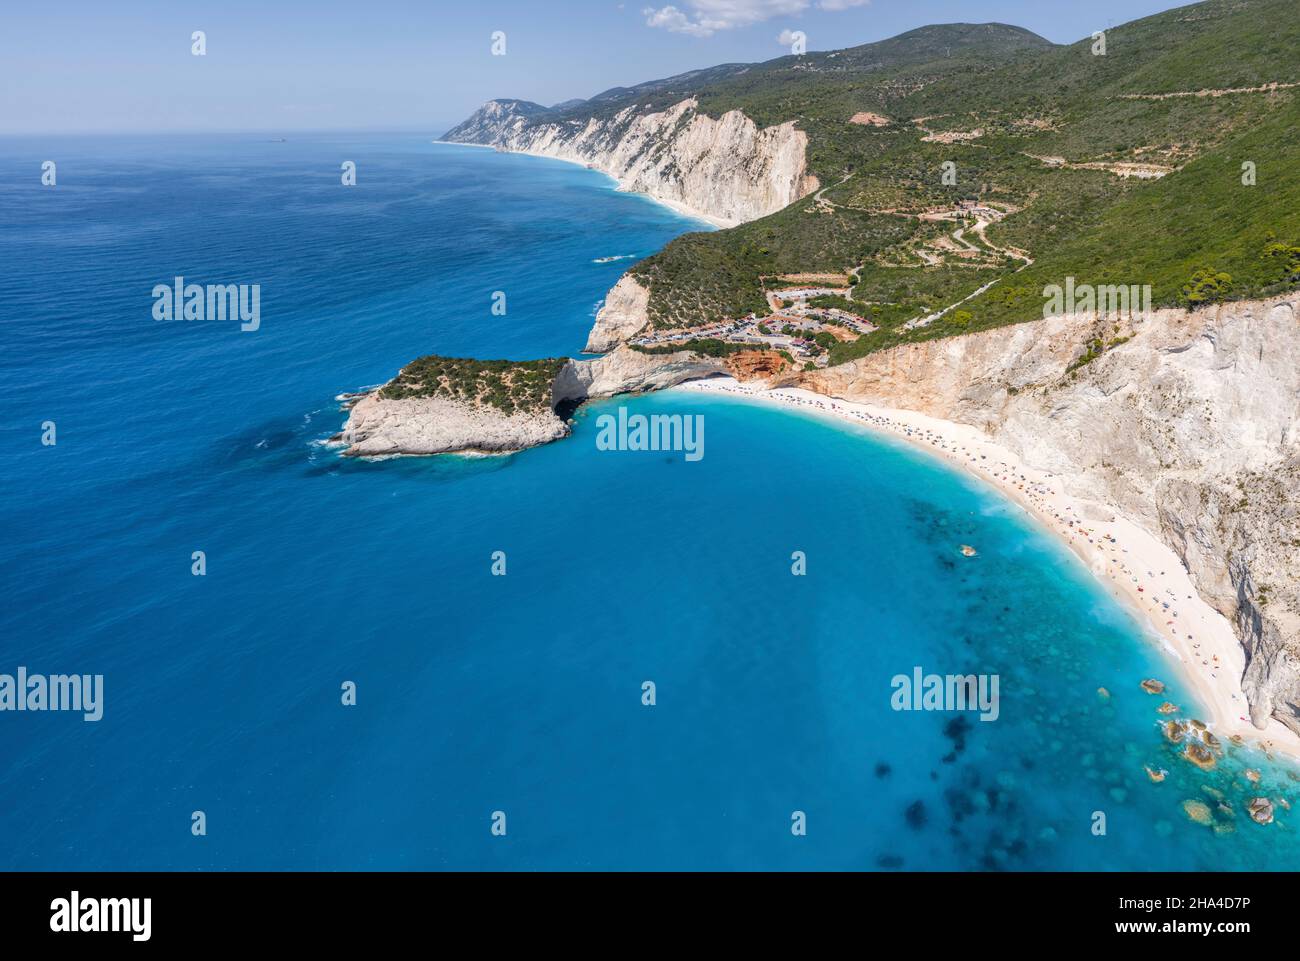 fotos panorámicas aéreas de la famosa ubicación turística de la playa paradisíaca en lefkada, grecia. porto katsiki acantilados legendarios y vistas de impresionantes paisajes marinos. Foto de stock